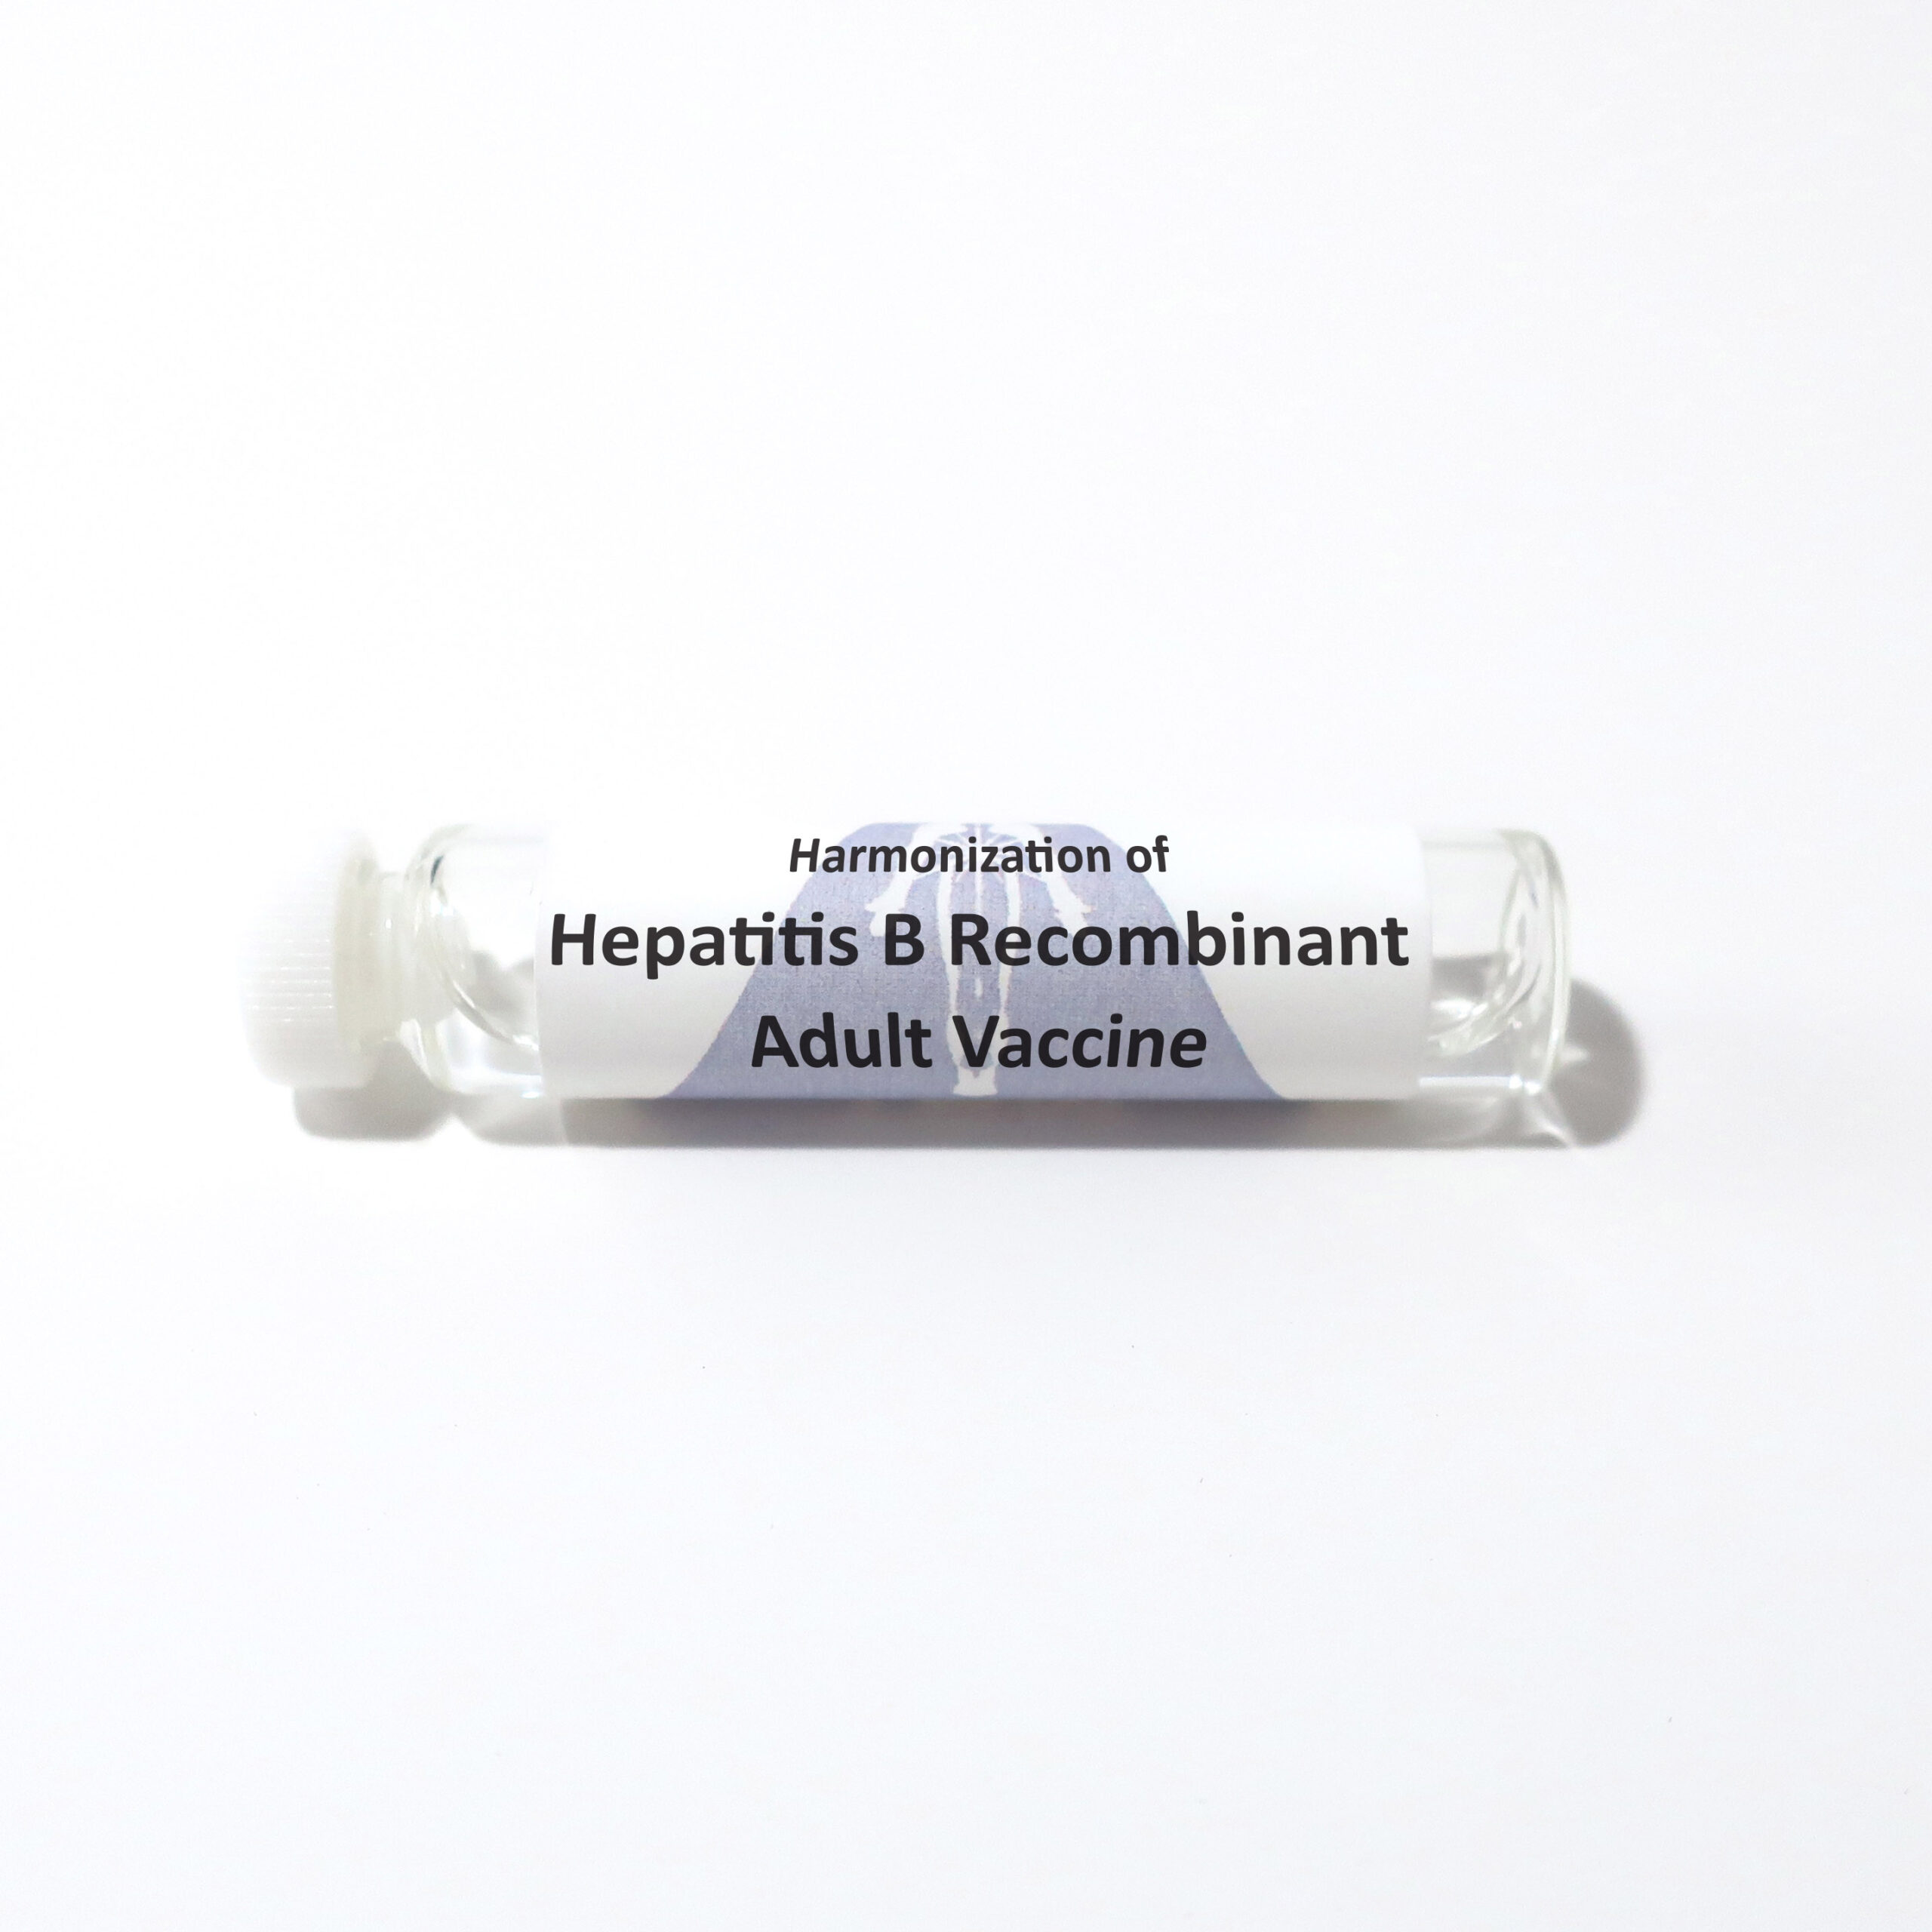 Hepatitis B Recombinant Adult Vaccine